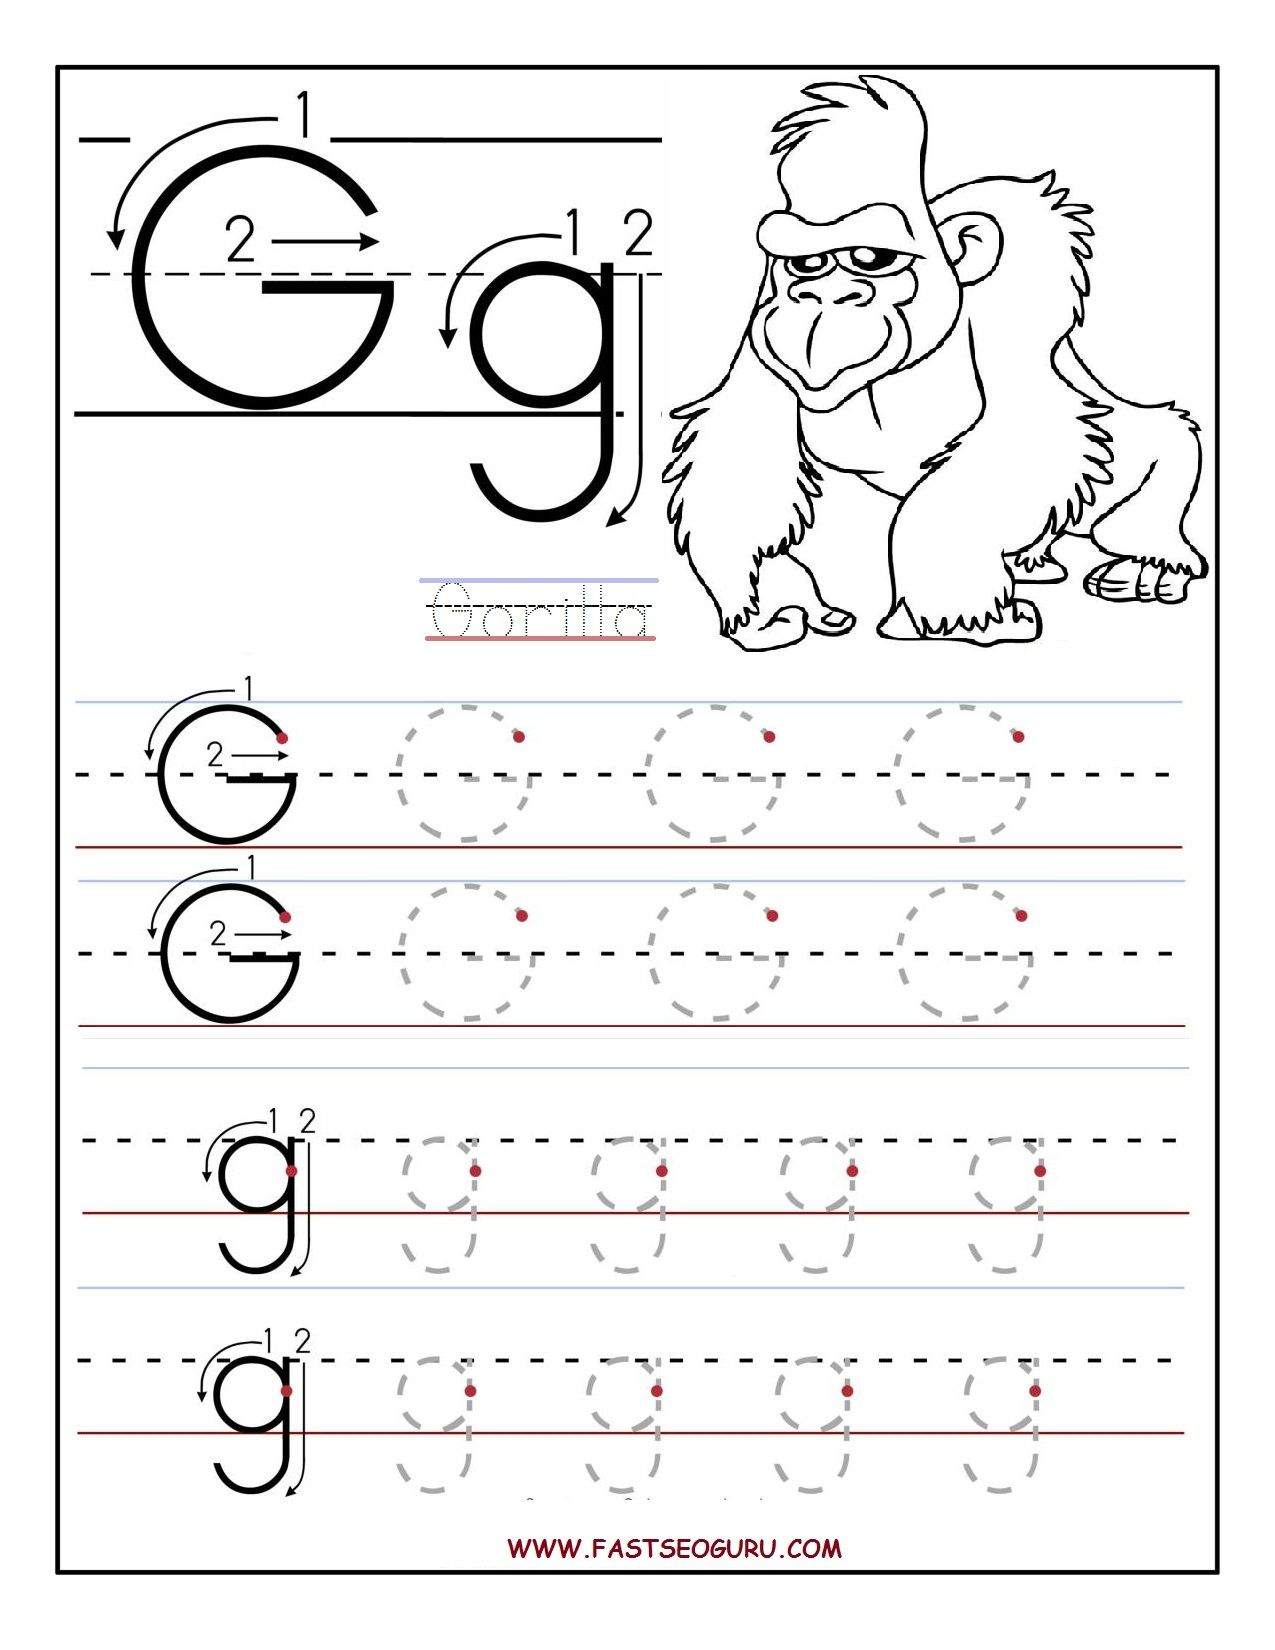 Worksheets For Preschoolers | Printable Letter G Tracing pertaining to G Letter Tracing Worksheet